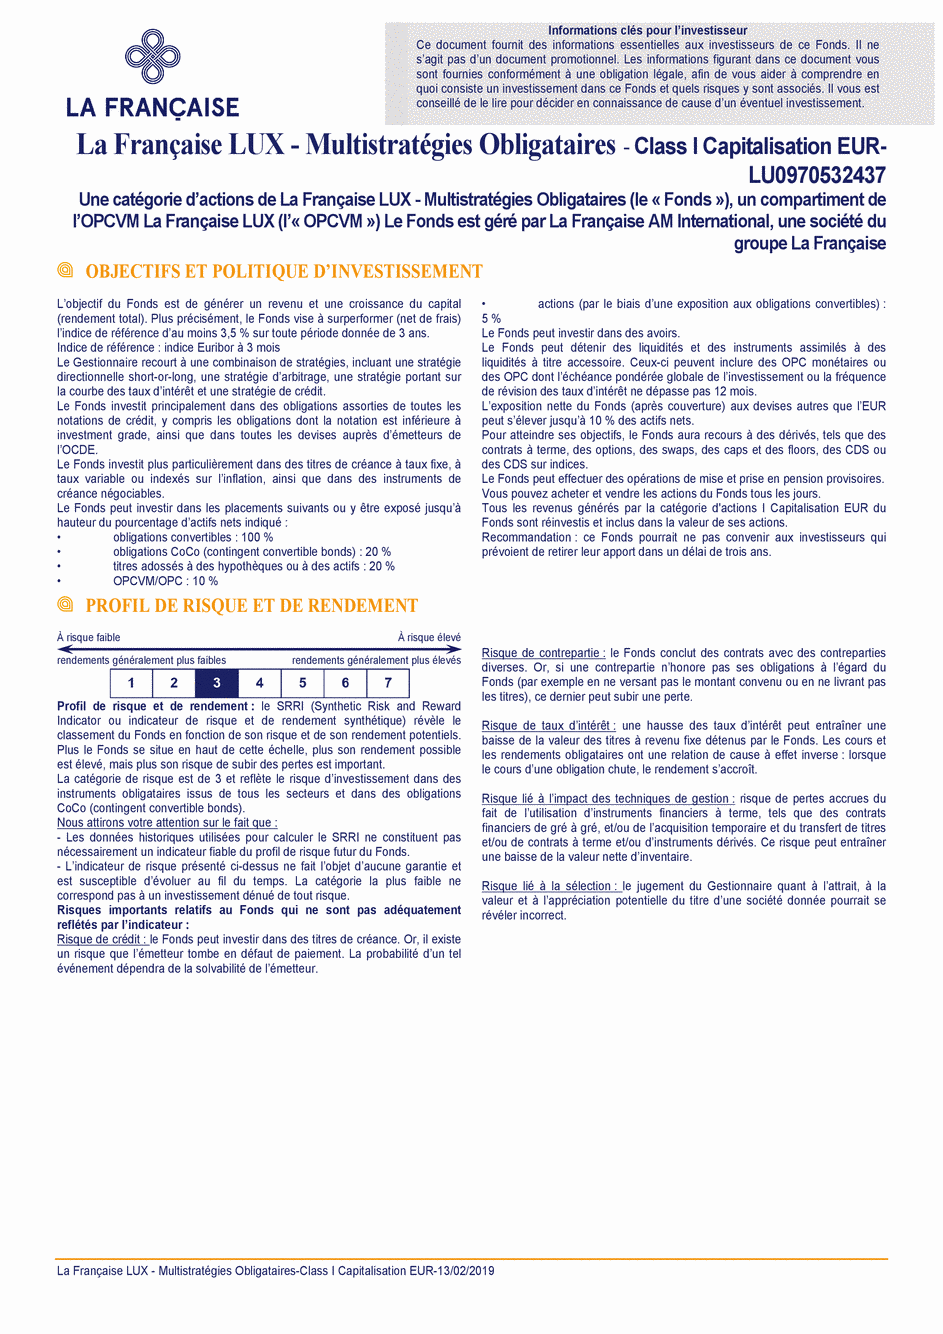 DICI La Française LUX - Multistratégies Obligataires - I (C) EUR - 13/02/2019 - Français